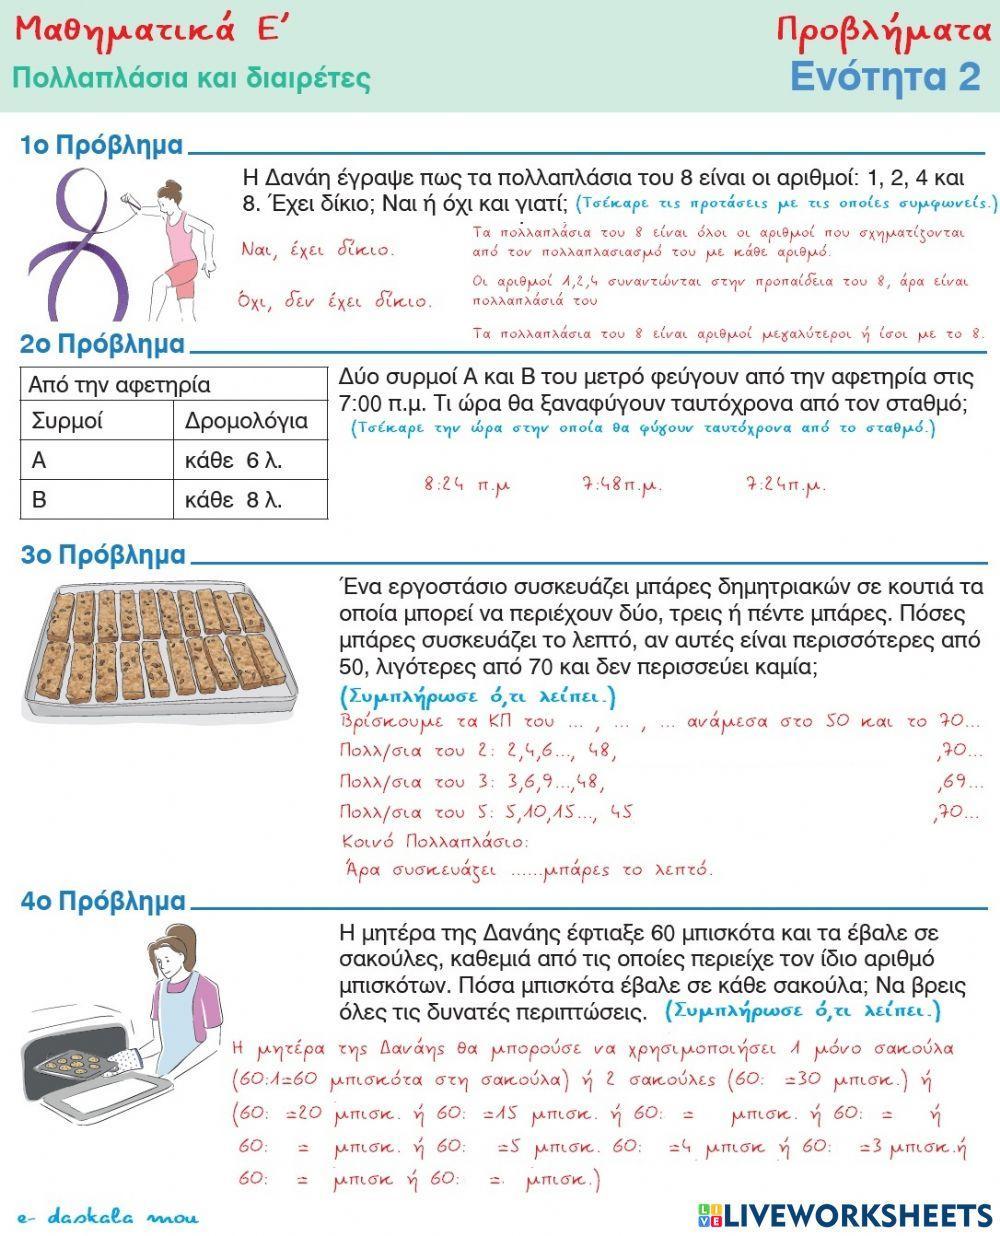 Μαθηματικά Ε΄-Πολλαπλάσια και Διαιρέτες - Προβλήματα